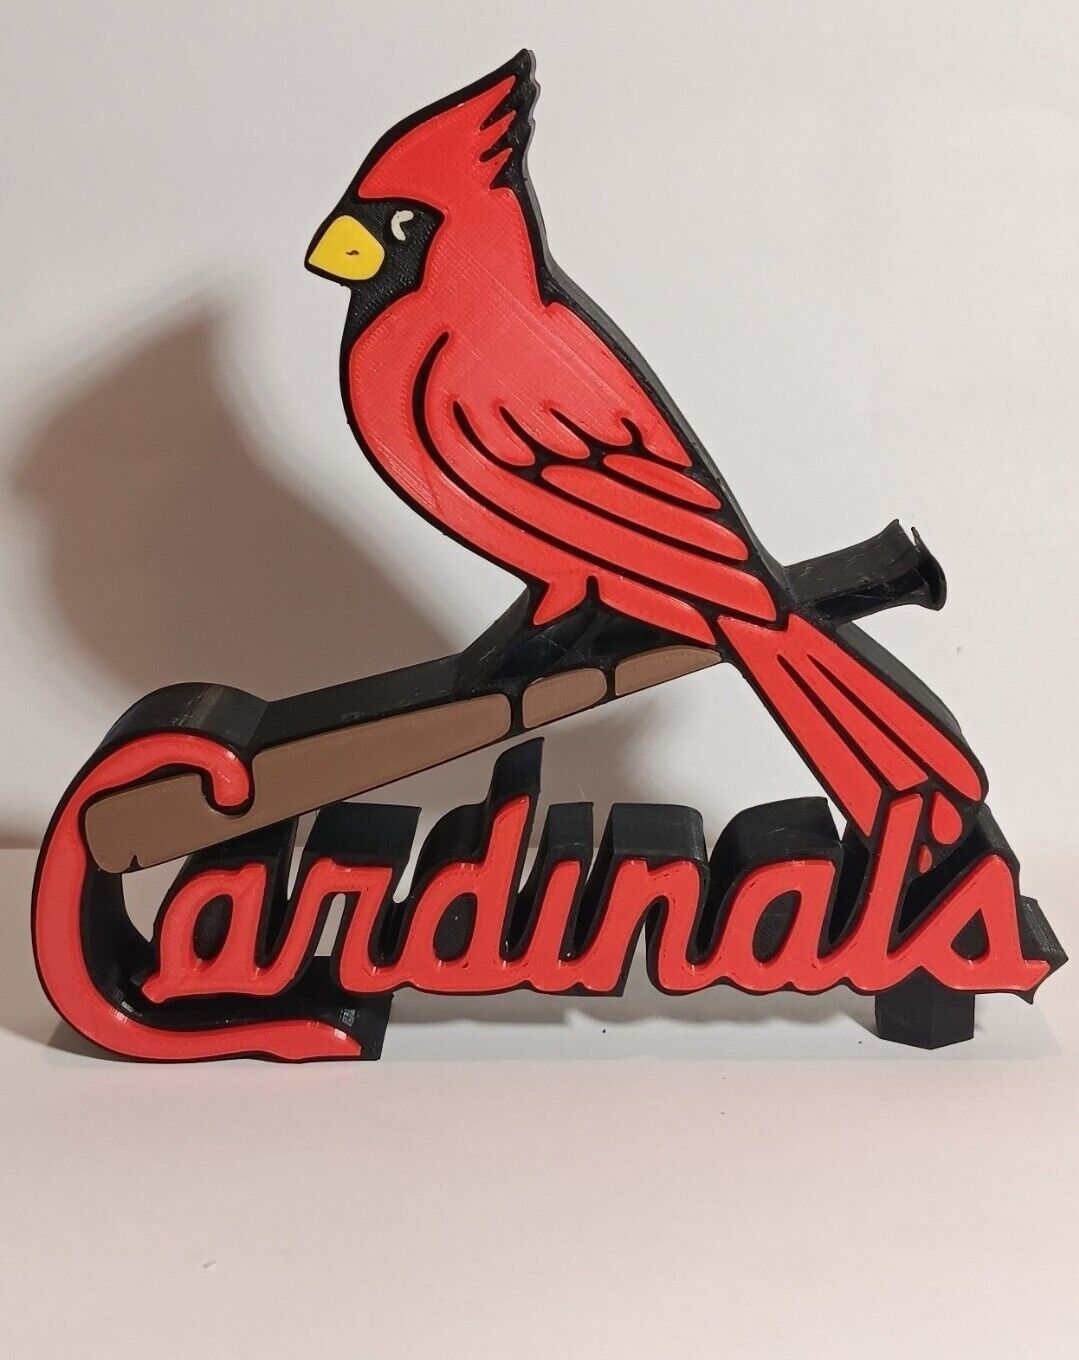 3D Printed St. Louis Cardinals Desktop Logo Display